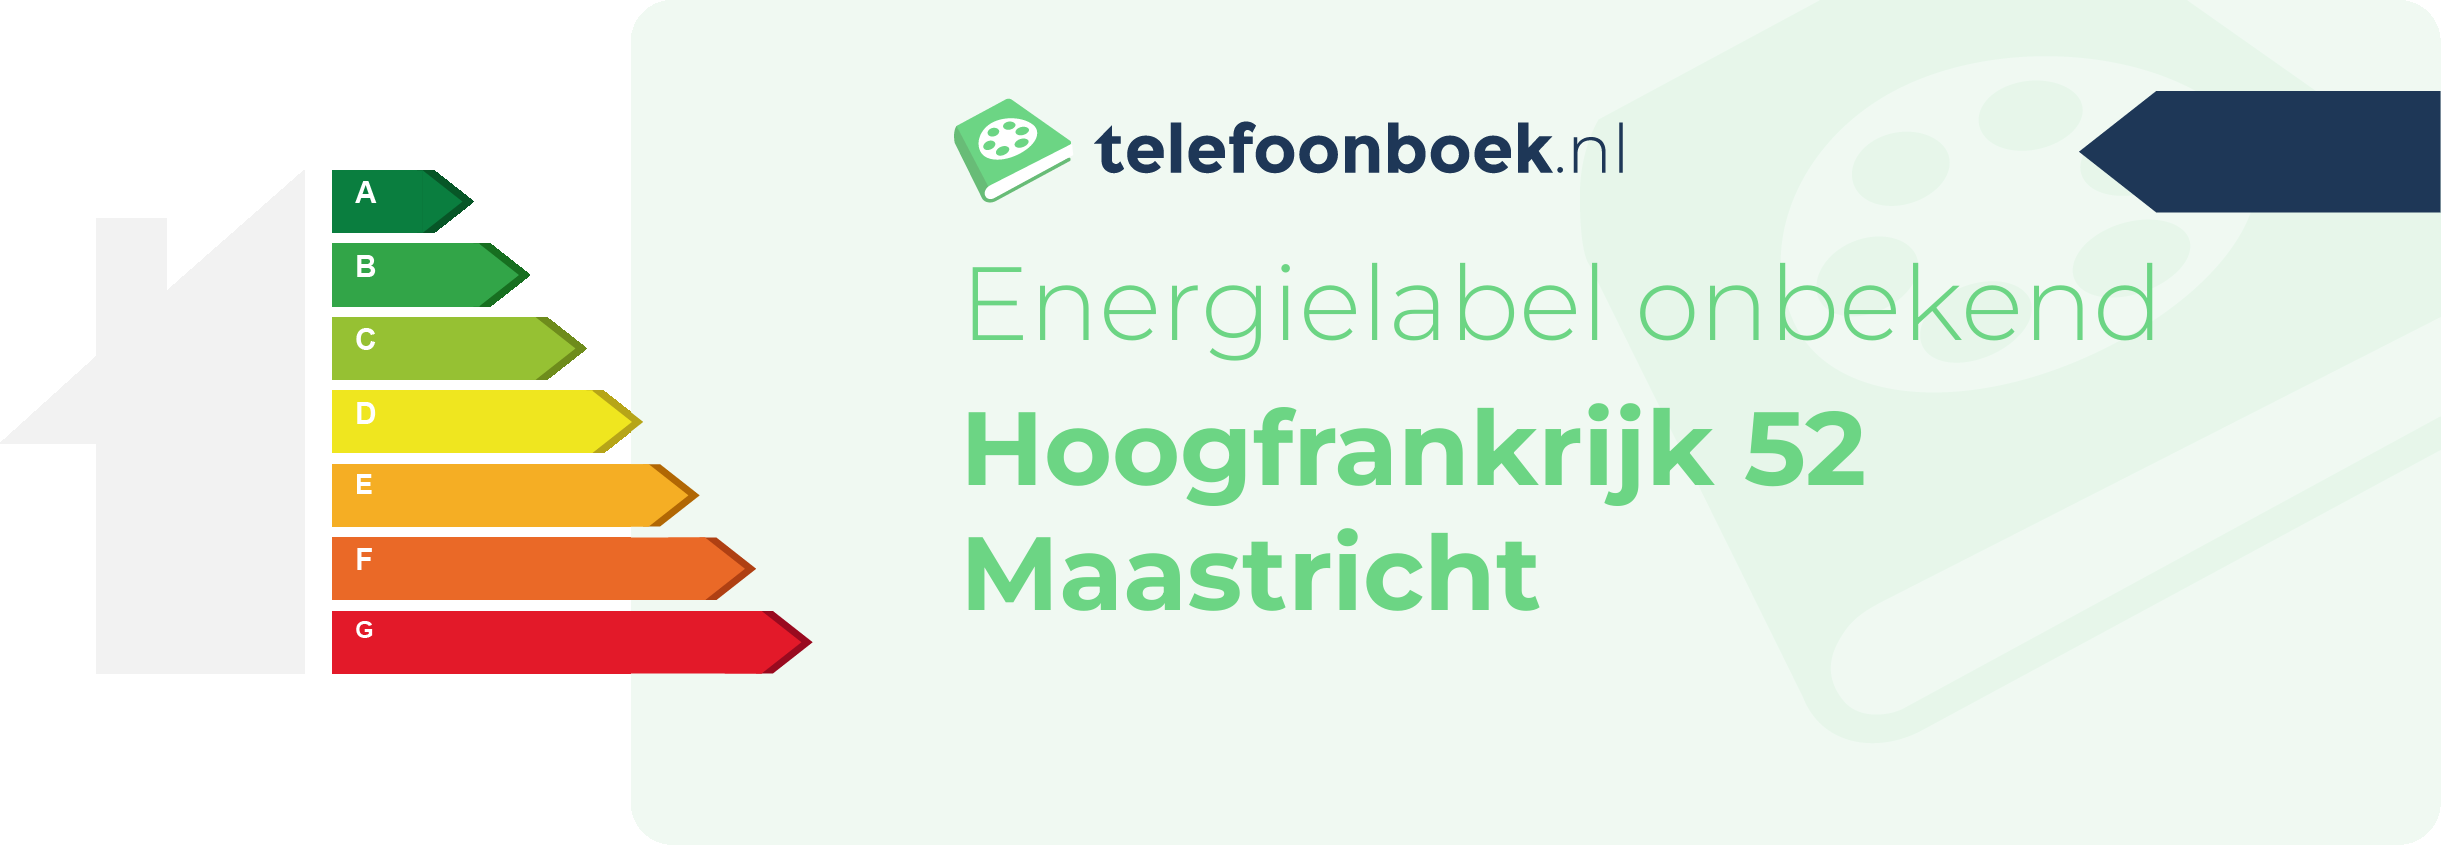 Energielabel Hoogfrankrijk 52 Maastricht